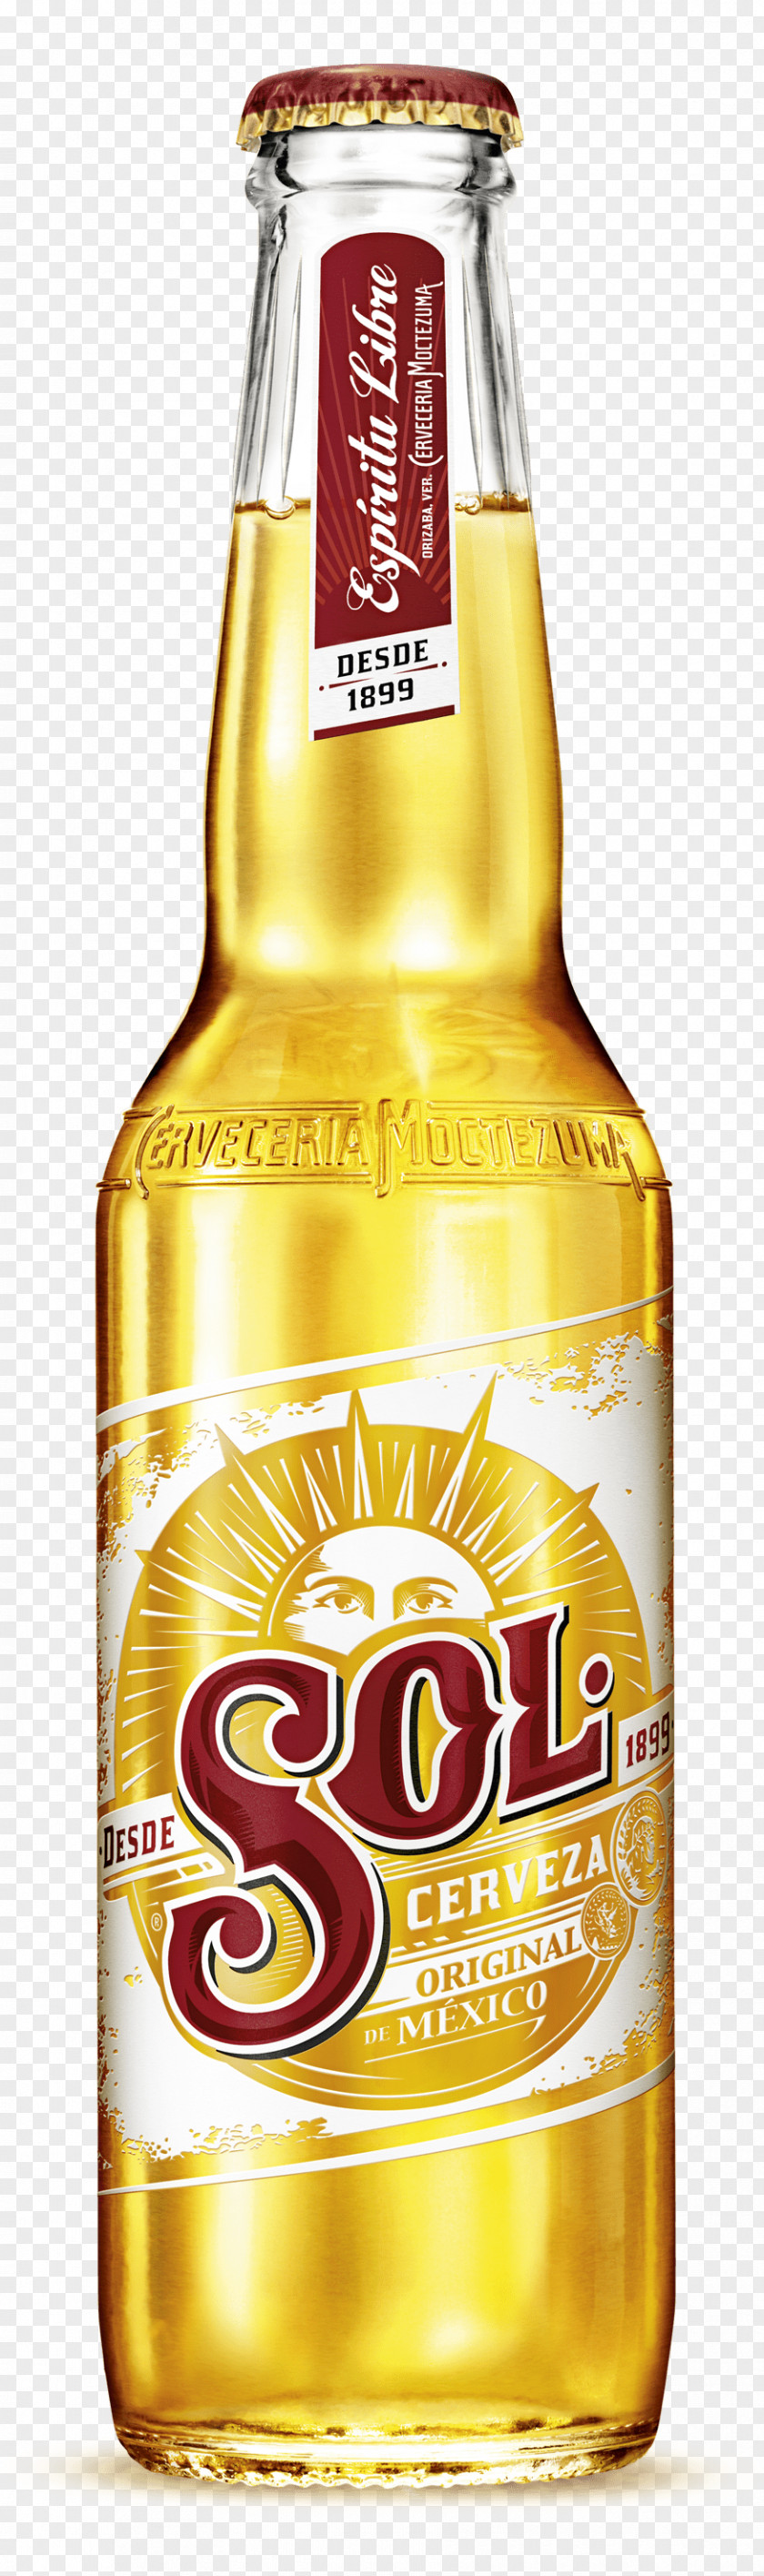 Sol Beer Bottle PNG Bottle, beer bottle clipart PNG